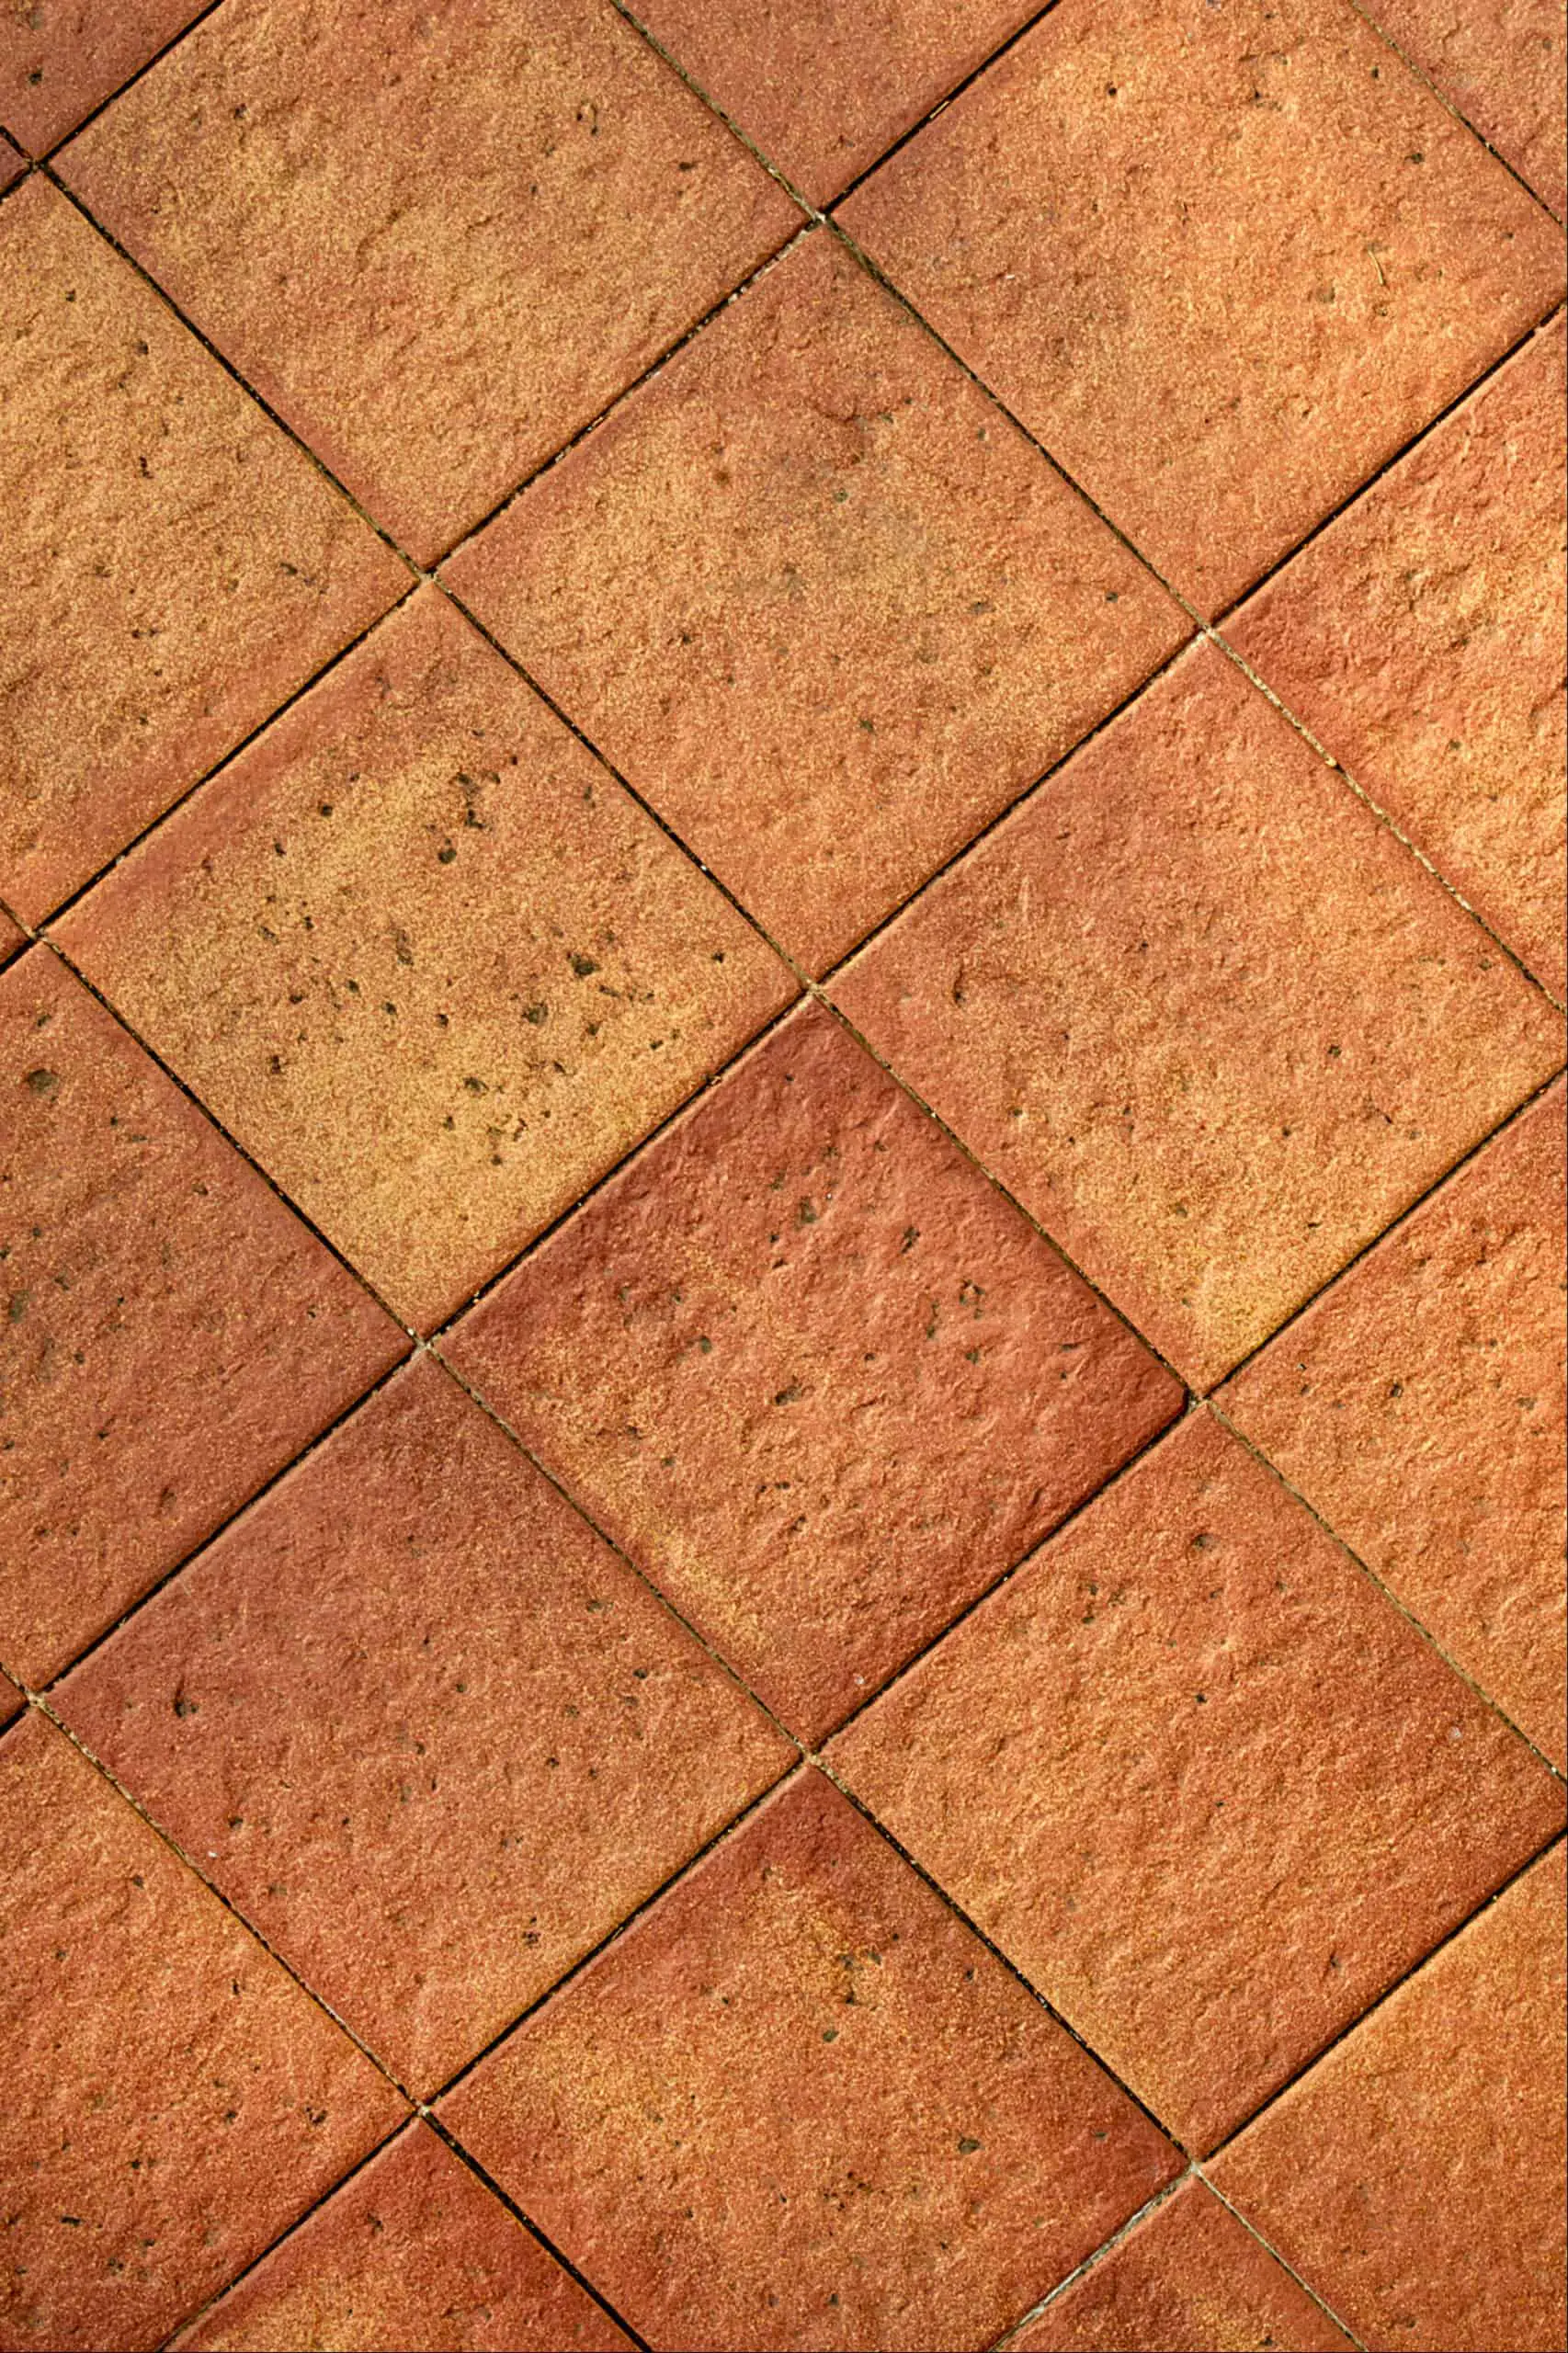 Terracotta Floor Tiles kitchen floor tile ideas